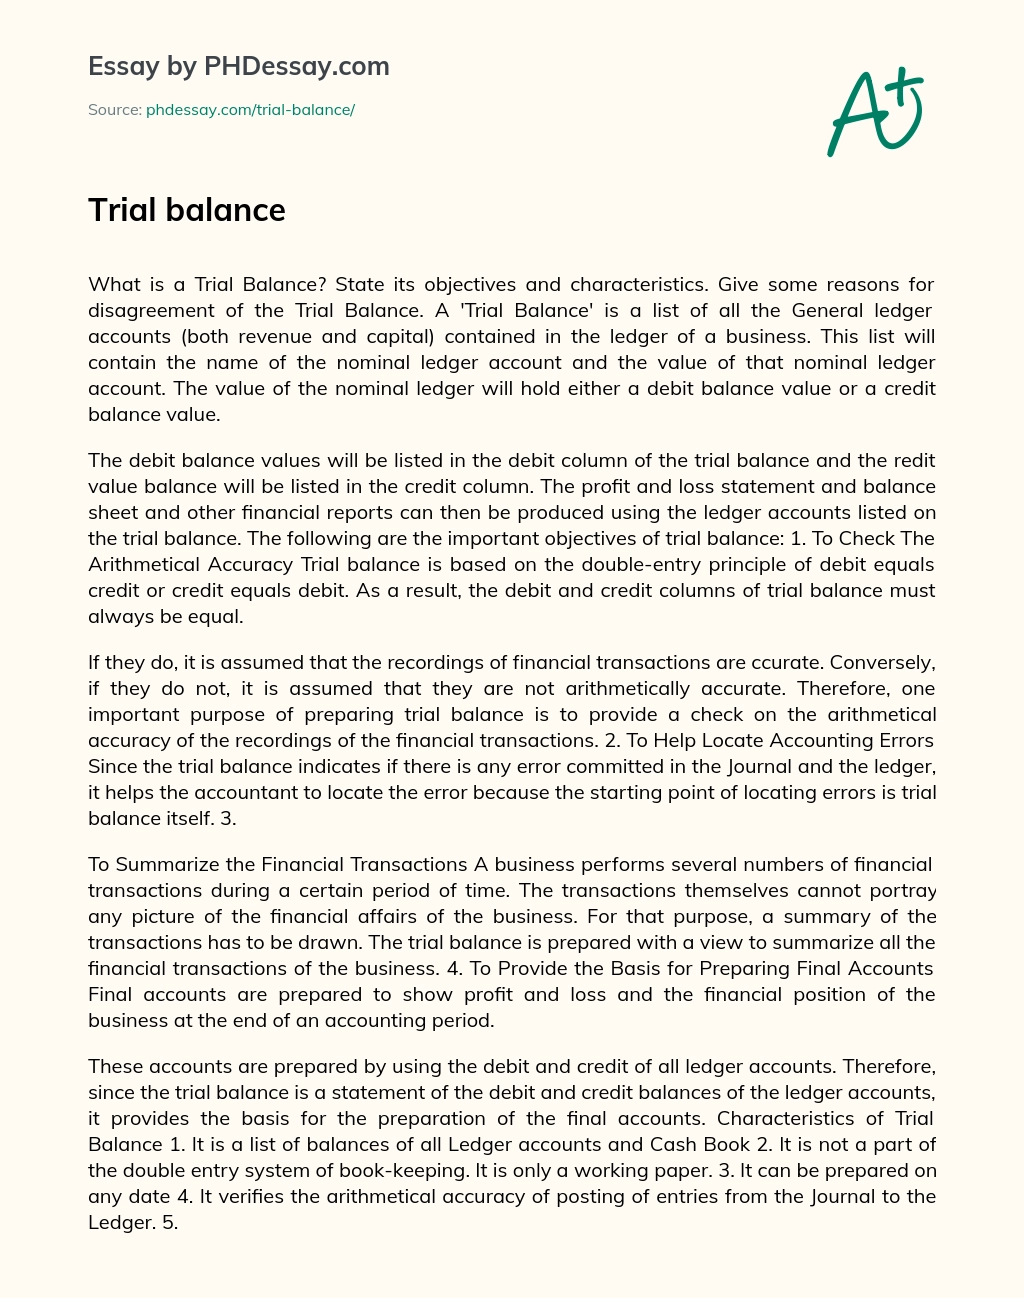 Trial balance essay